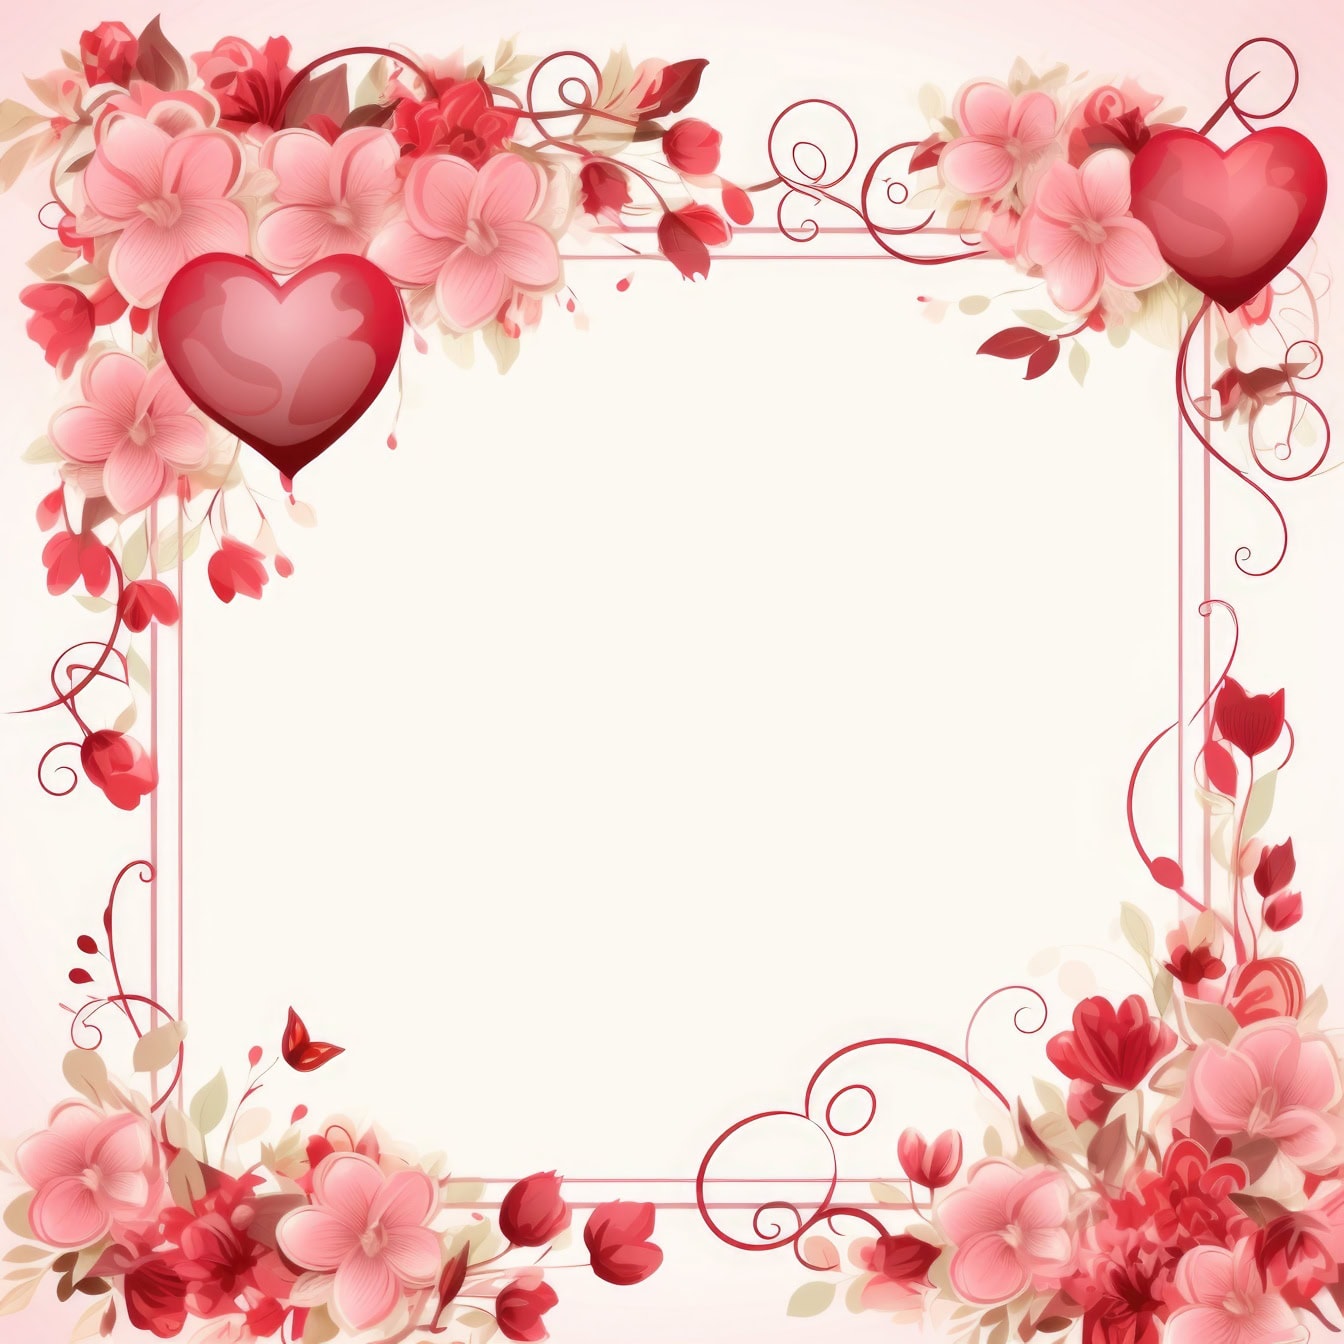 Шаблон вітальної листівки до Дня святого Валентина з рамкою з квітів і сердечок